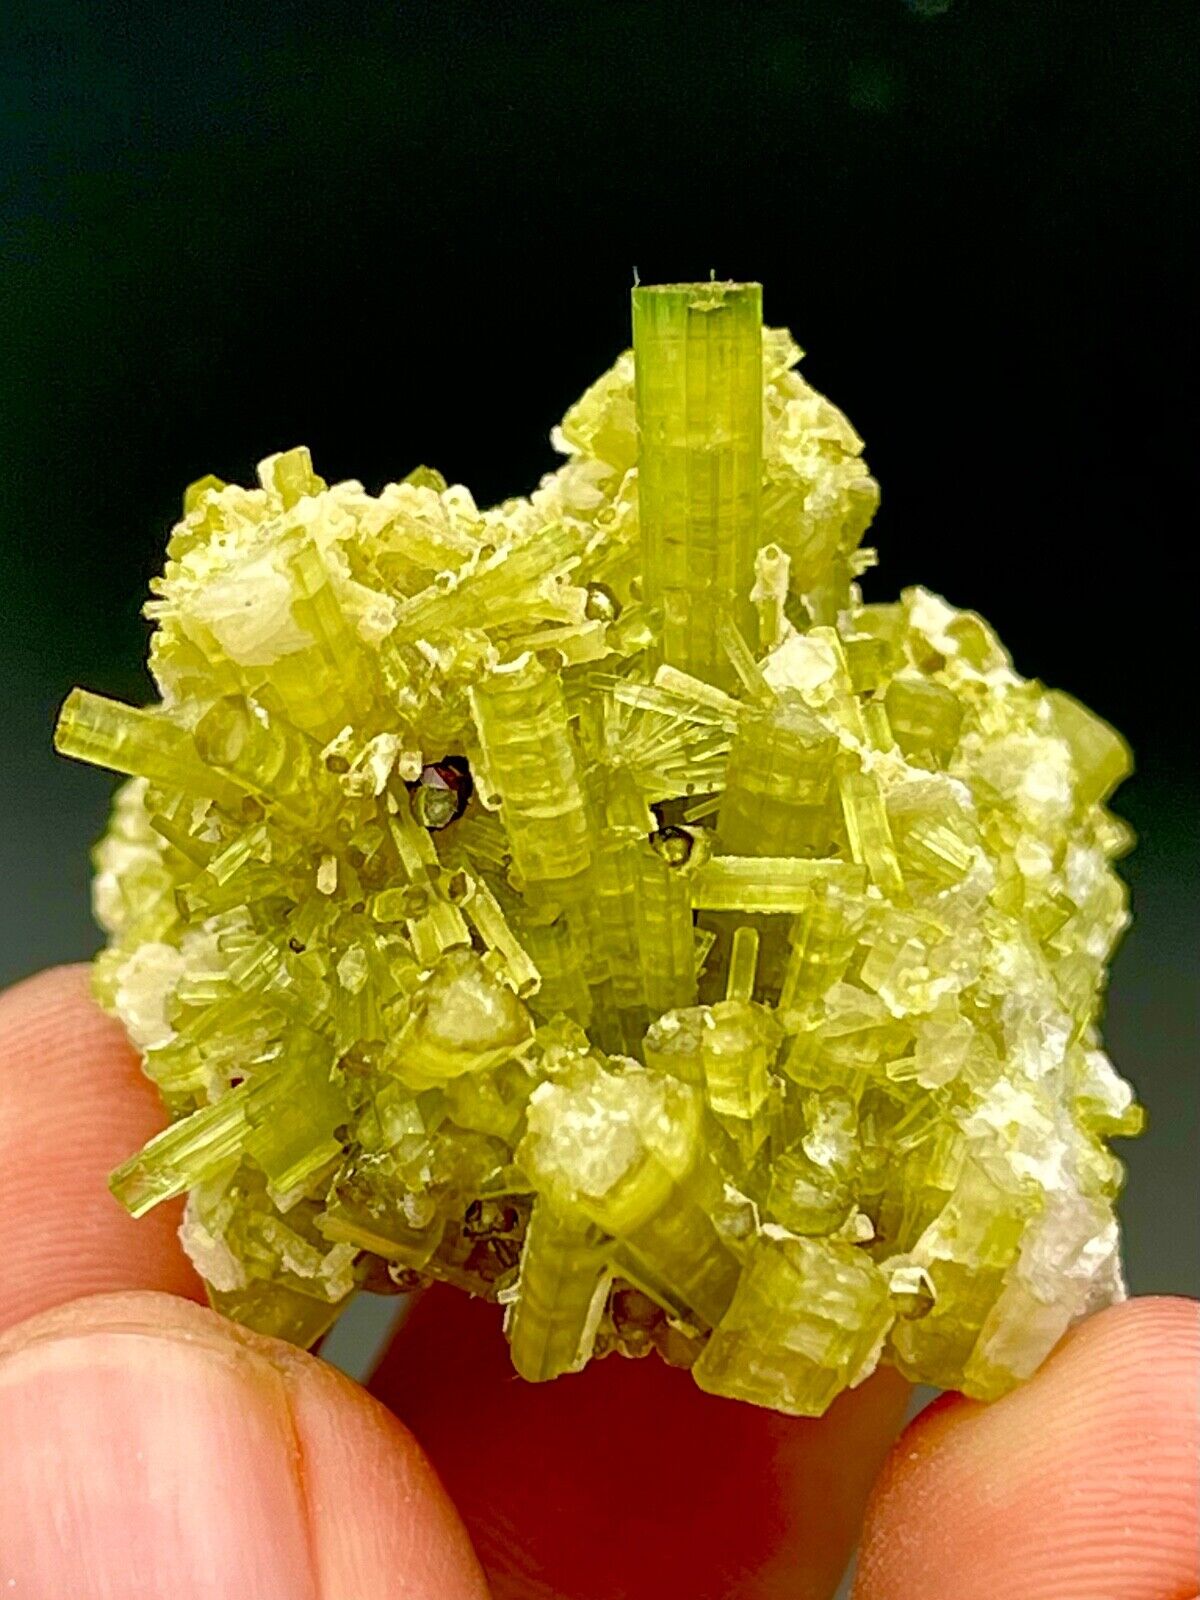 170 Carat Natural Green Tourmaline Cluster Specimen @ Mineral Specimens